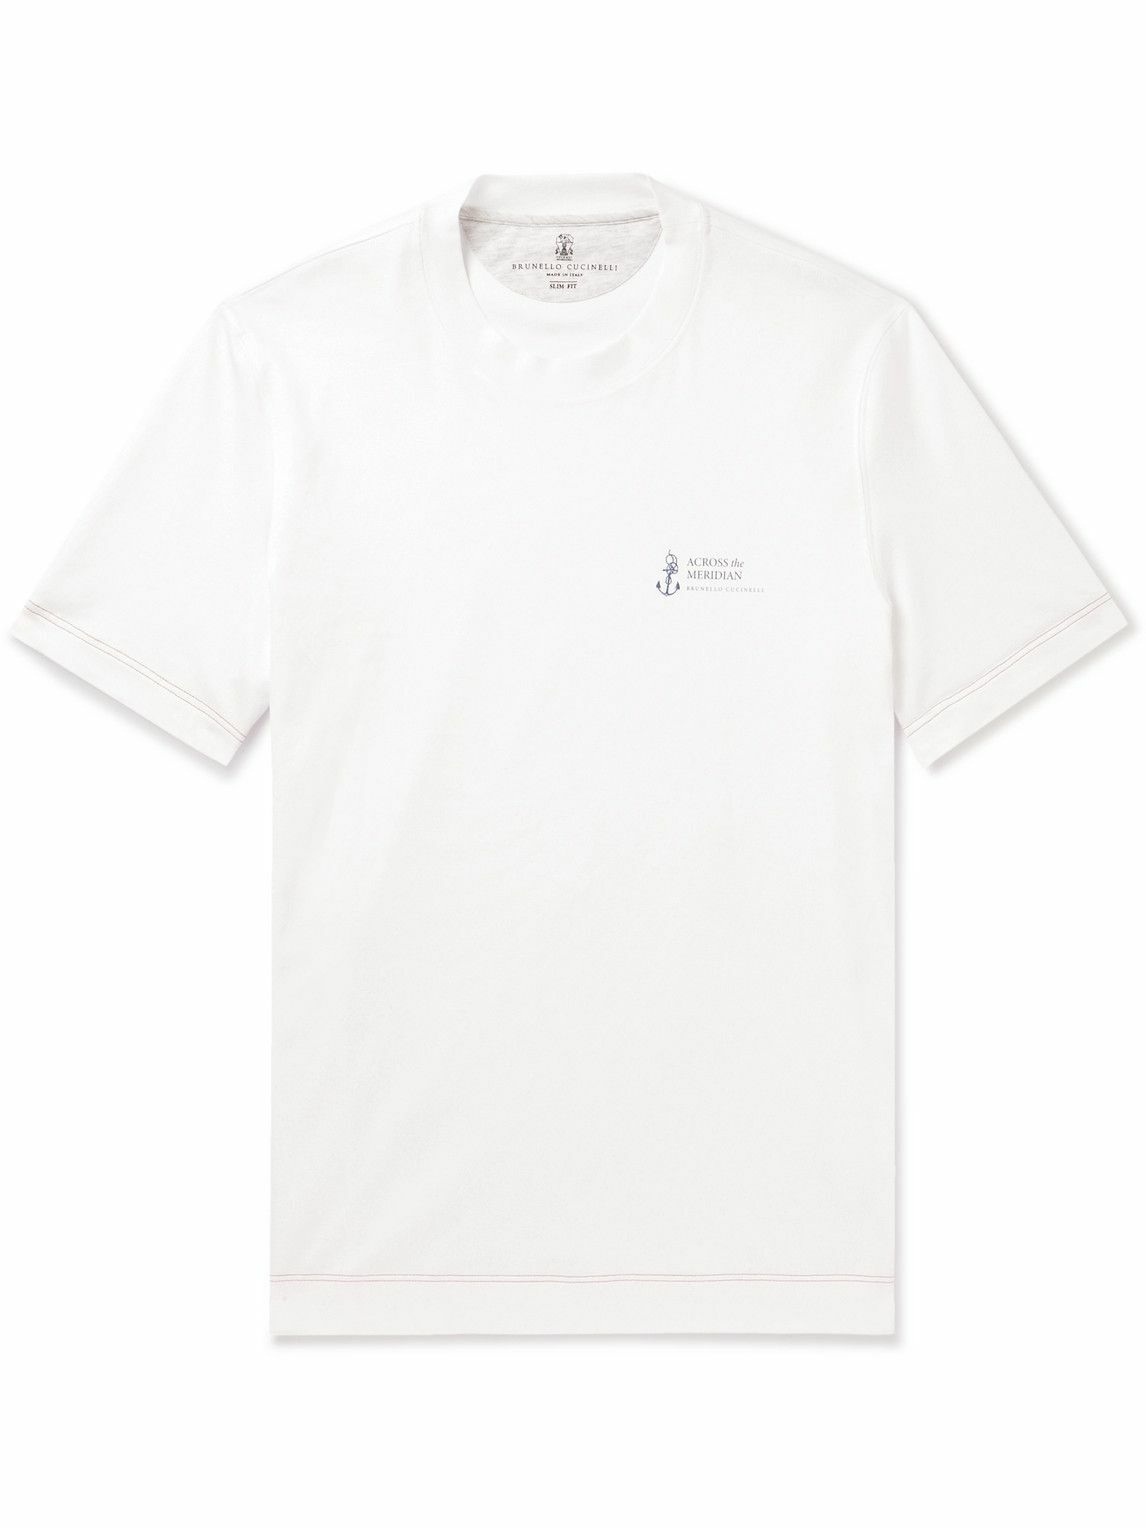 Brunello Cucinelli - Printed Cotton-Jersey T-Shirt - White Brunello ...